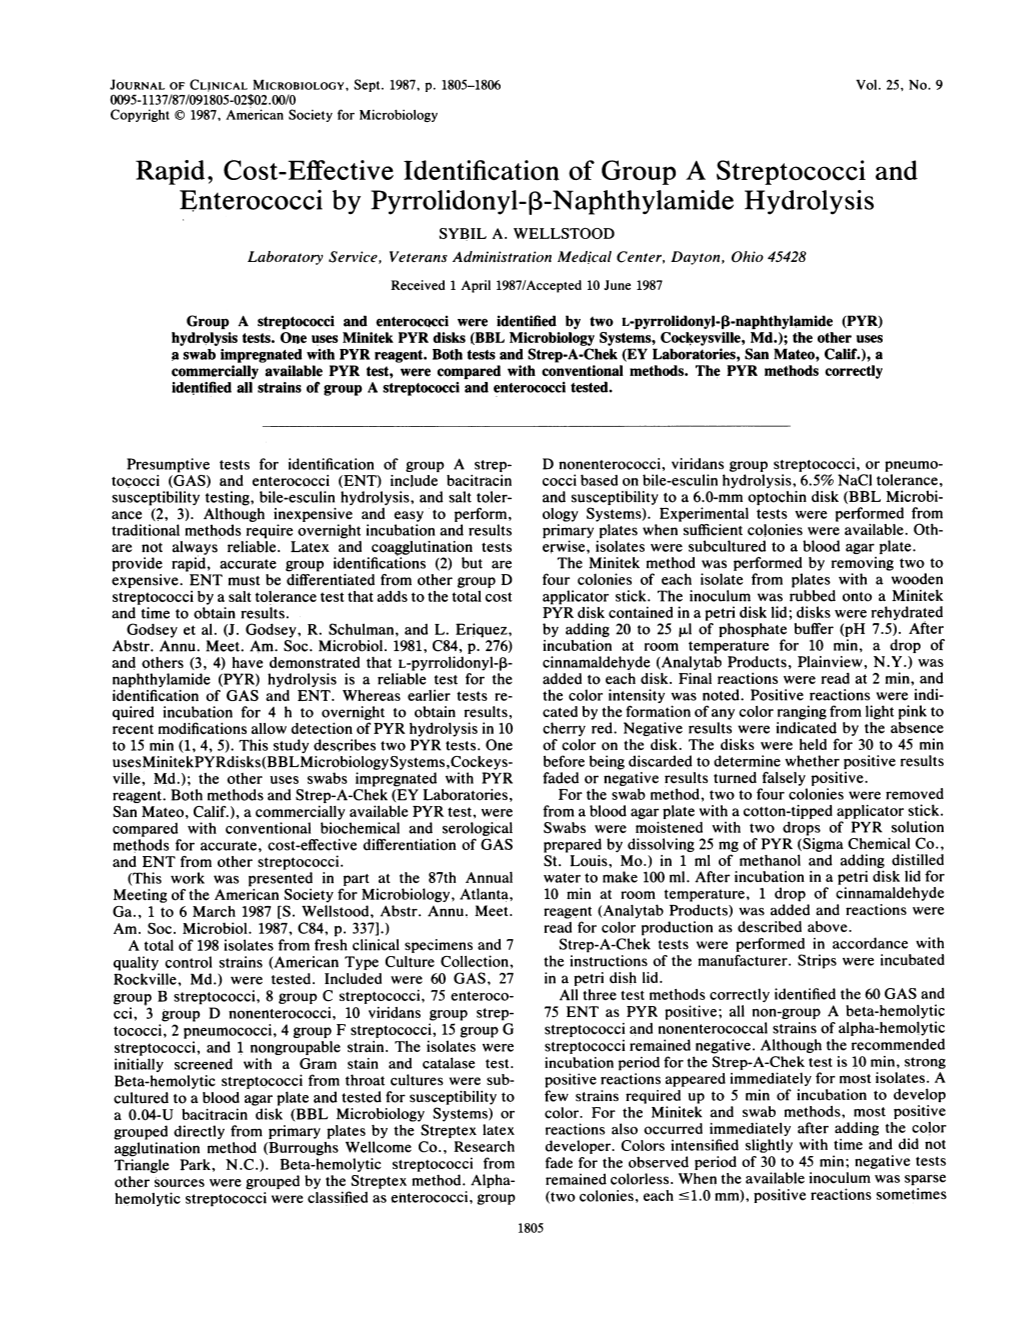 Enterococci by Pyrrolidonyl-3-Naphthylamide Hydrolysis SYBIL A